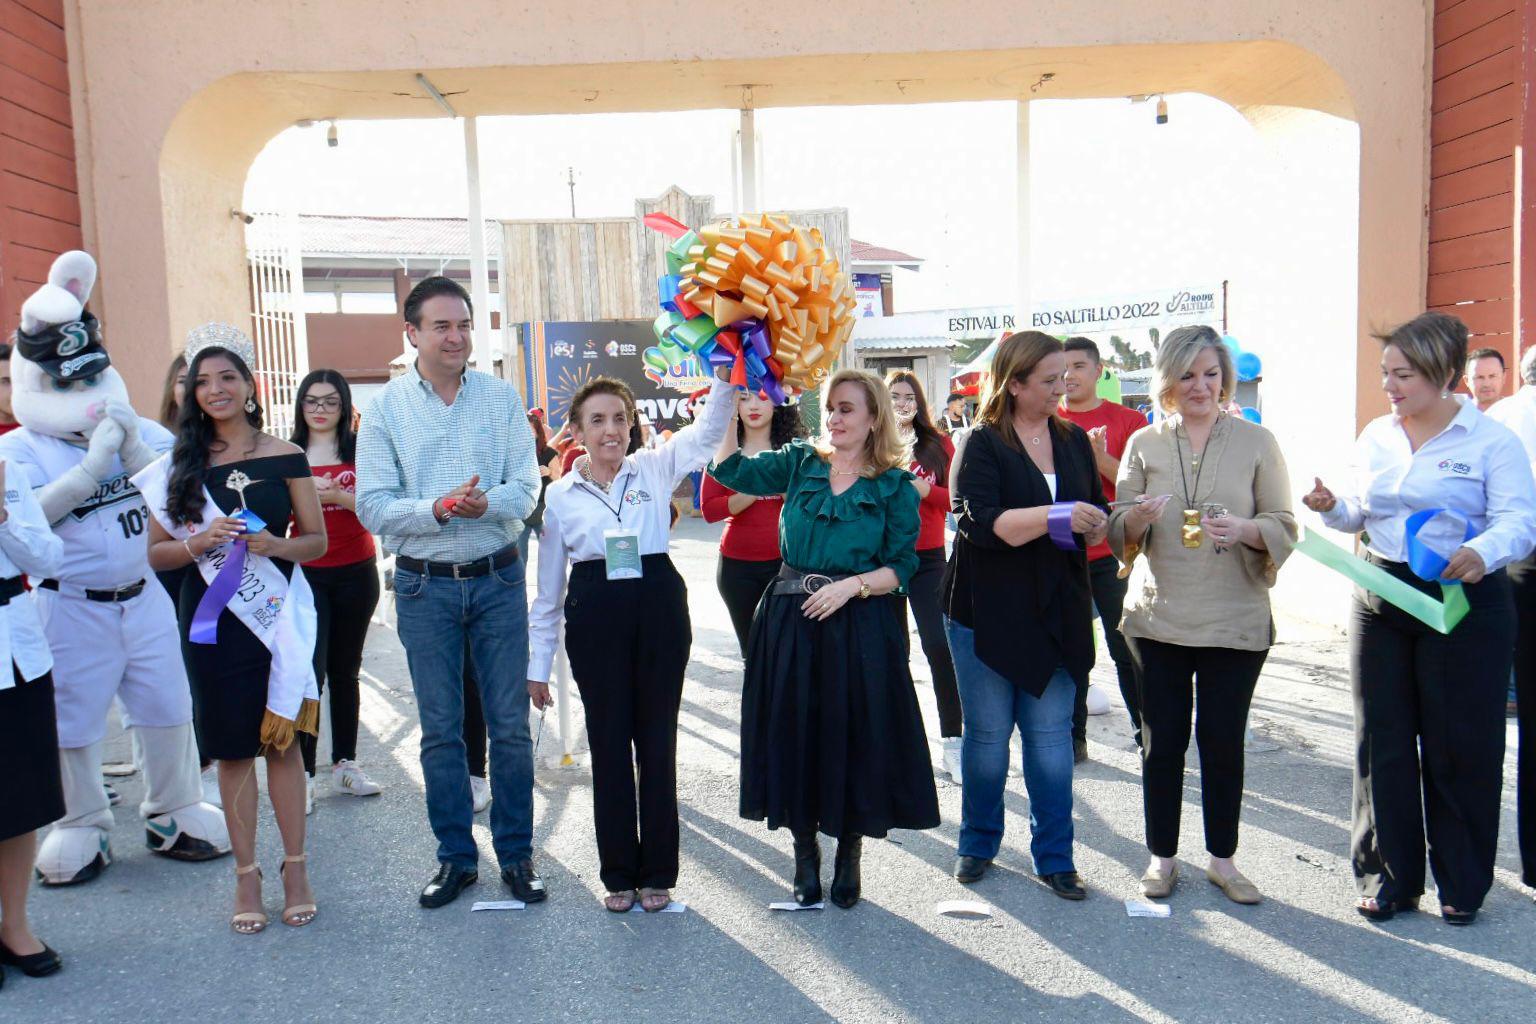 $!Se calcula que eventos como la Feria ayudan a impulsar el turismo del estado, rubro en el cual se espera una derrama de 950 millones de pesos para este año.